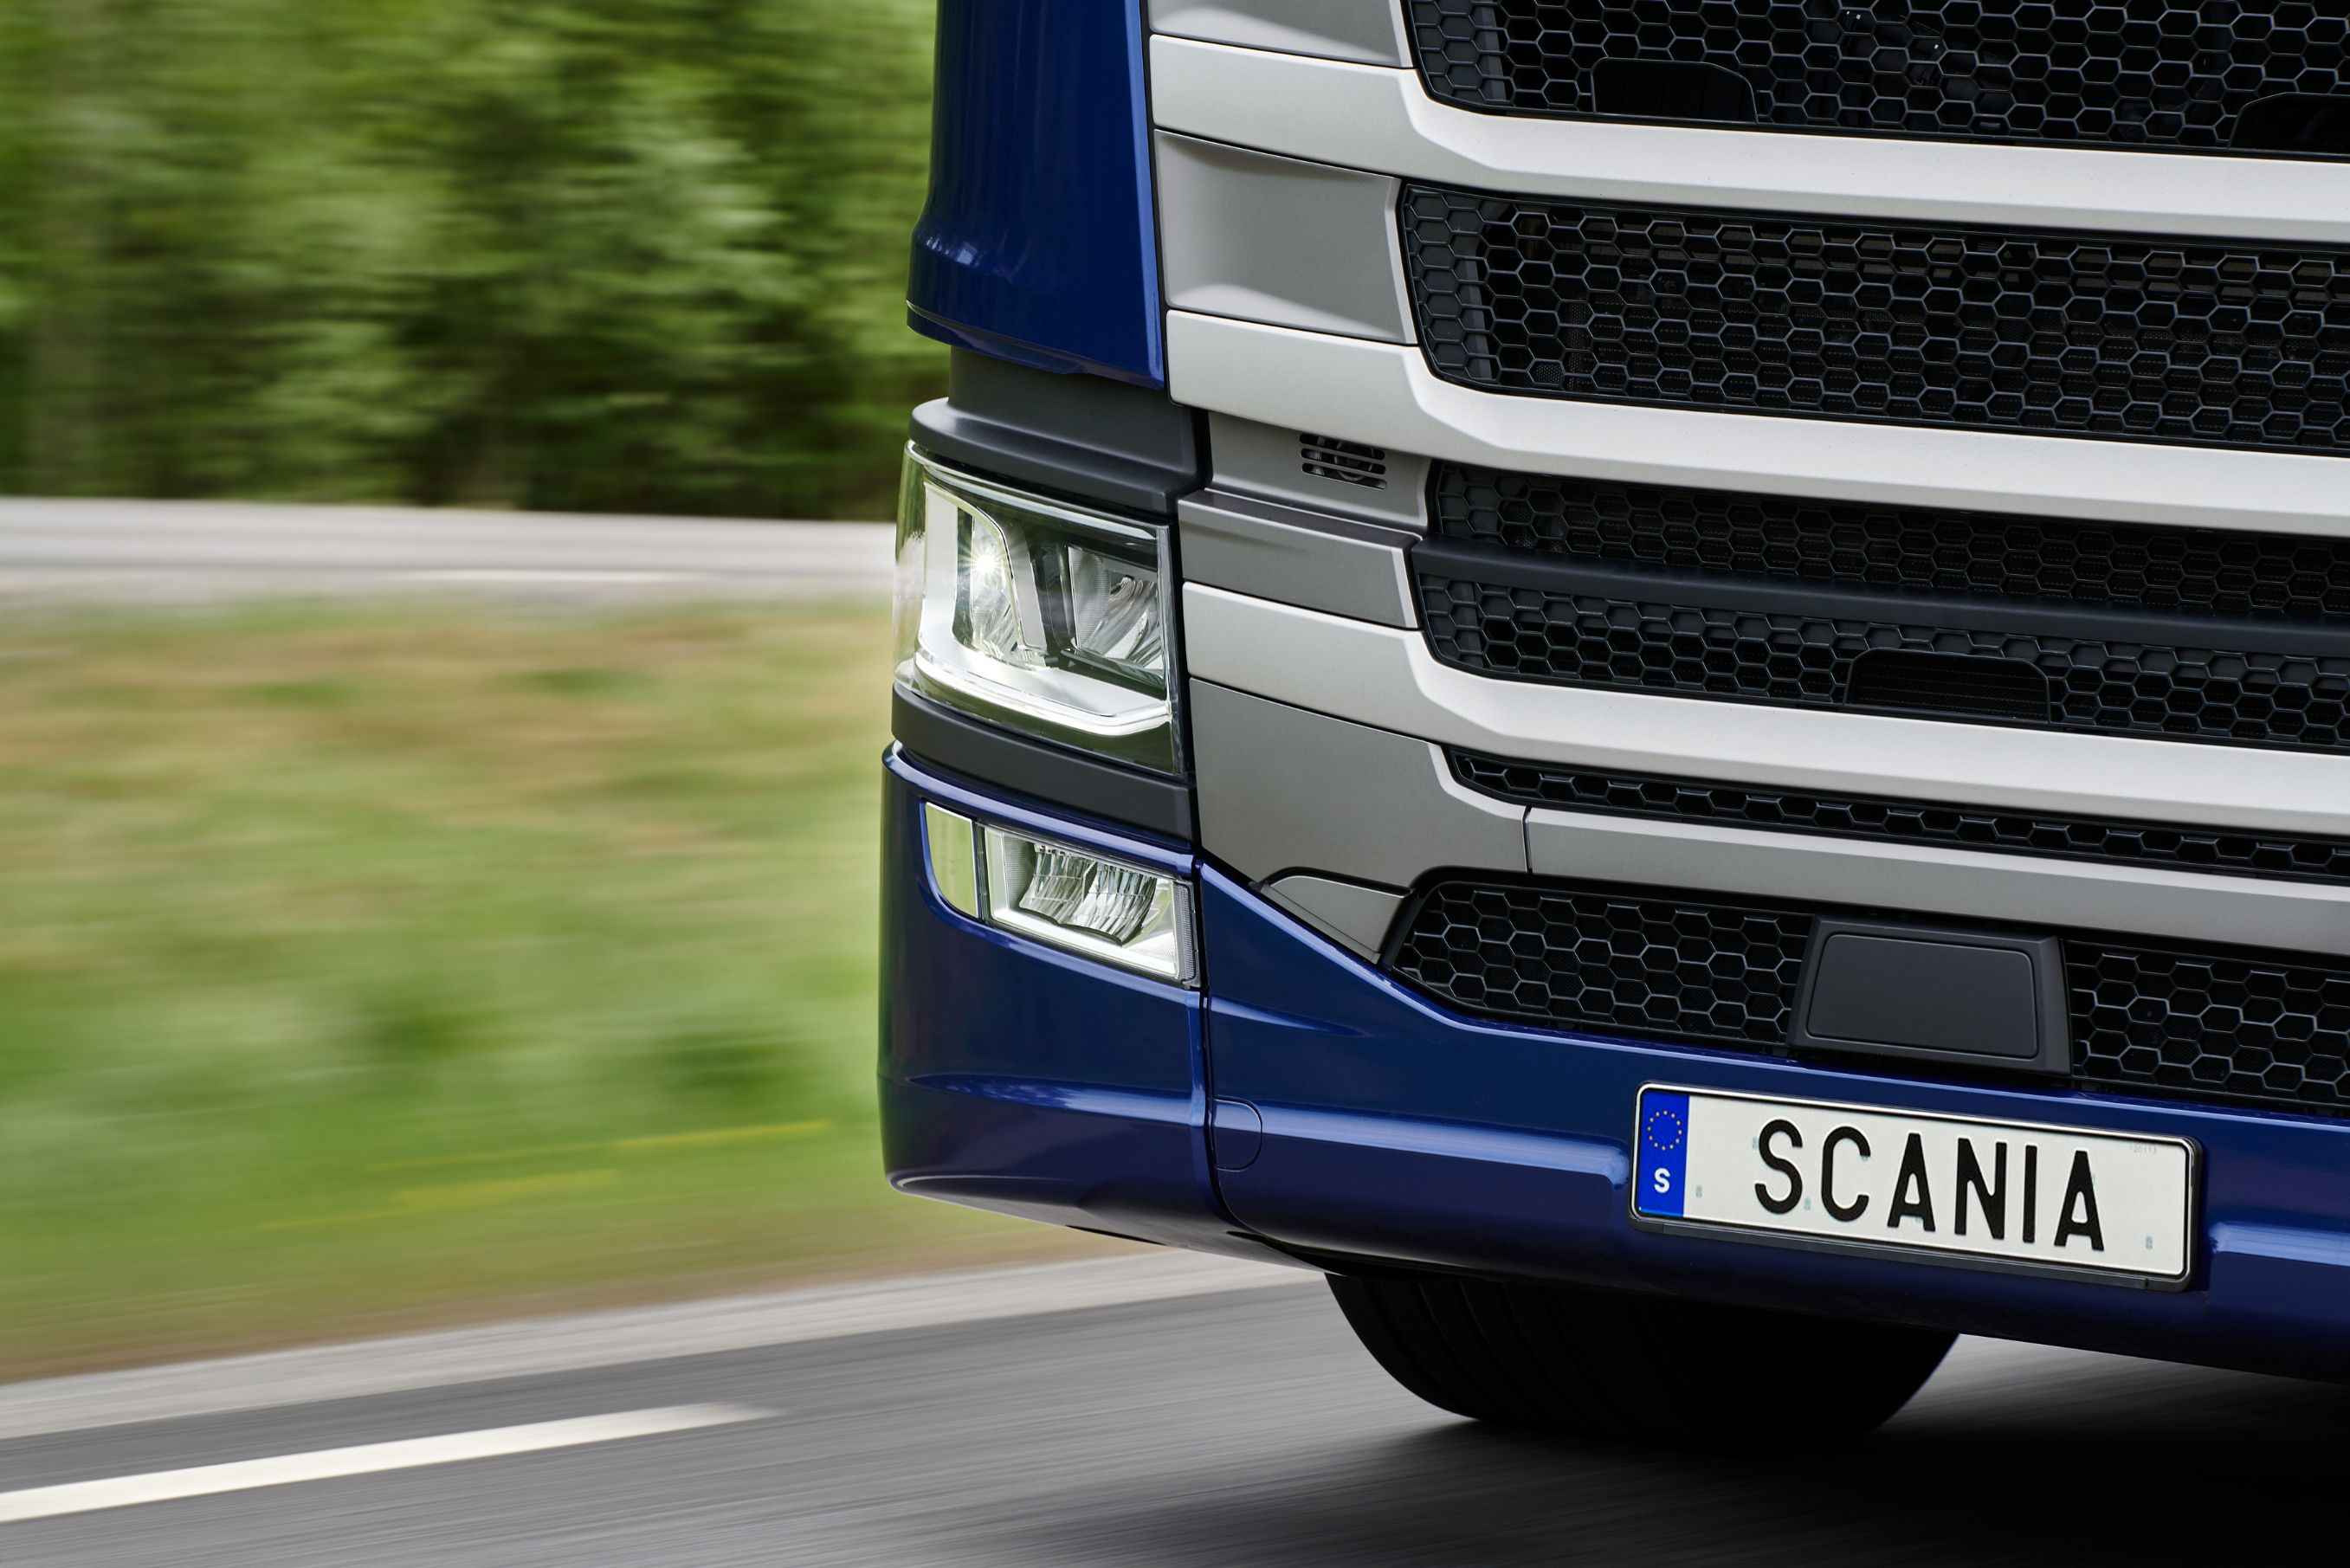 Scania kündigt Produktneuheit für November an